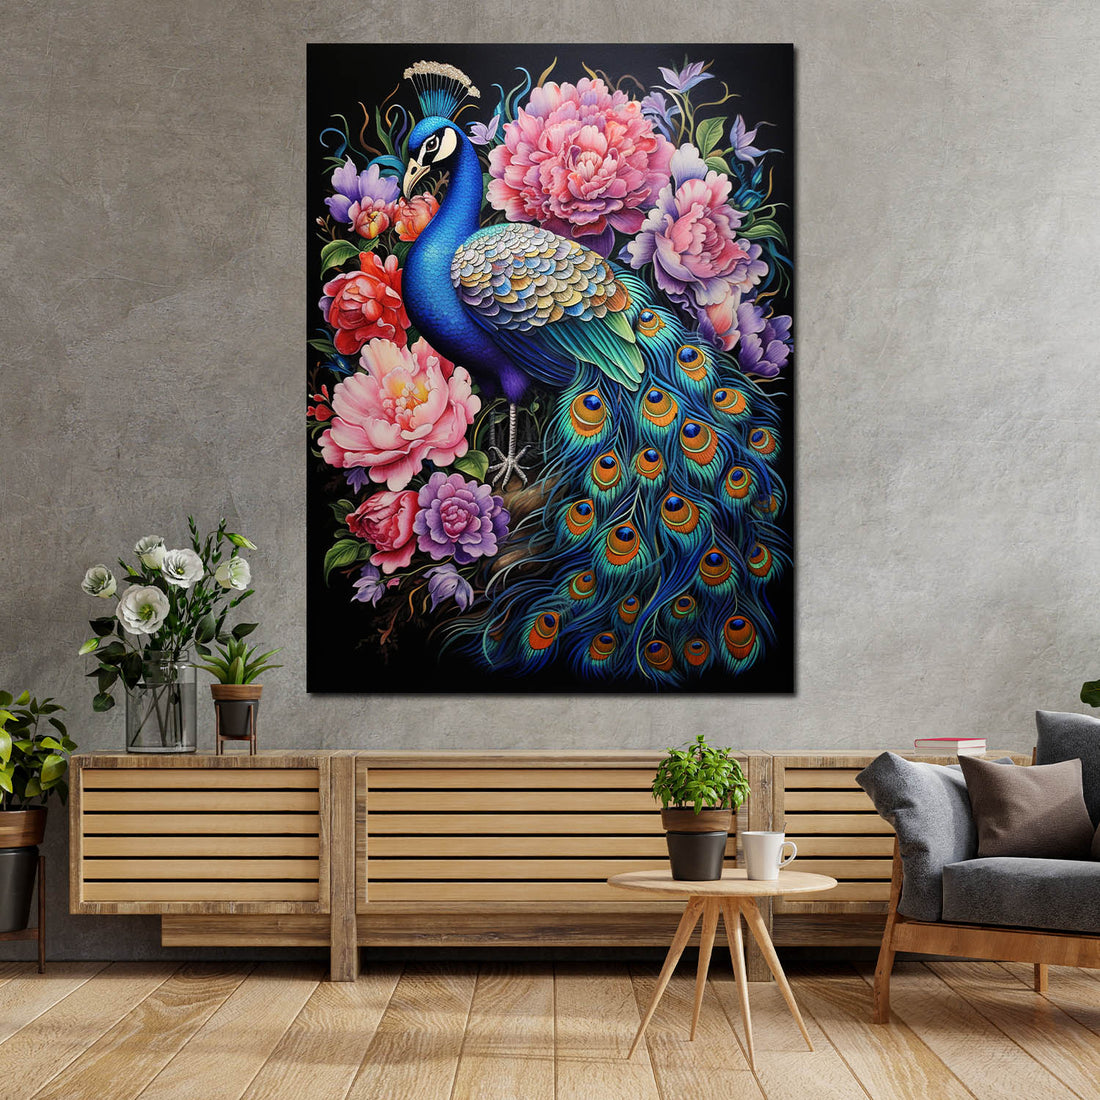 Wandbild wunderschöner Pfau mit Blumen